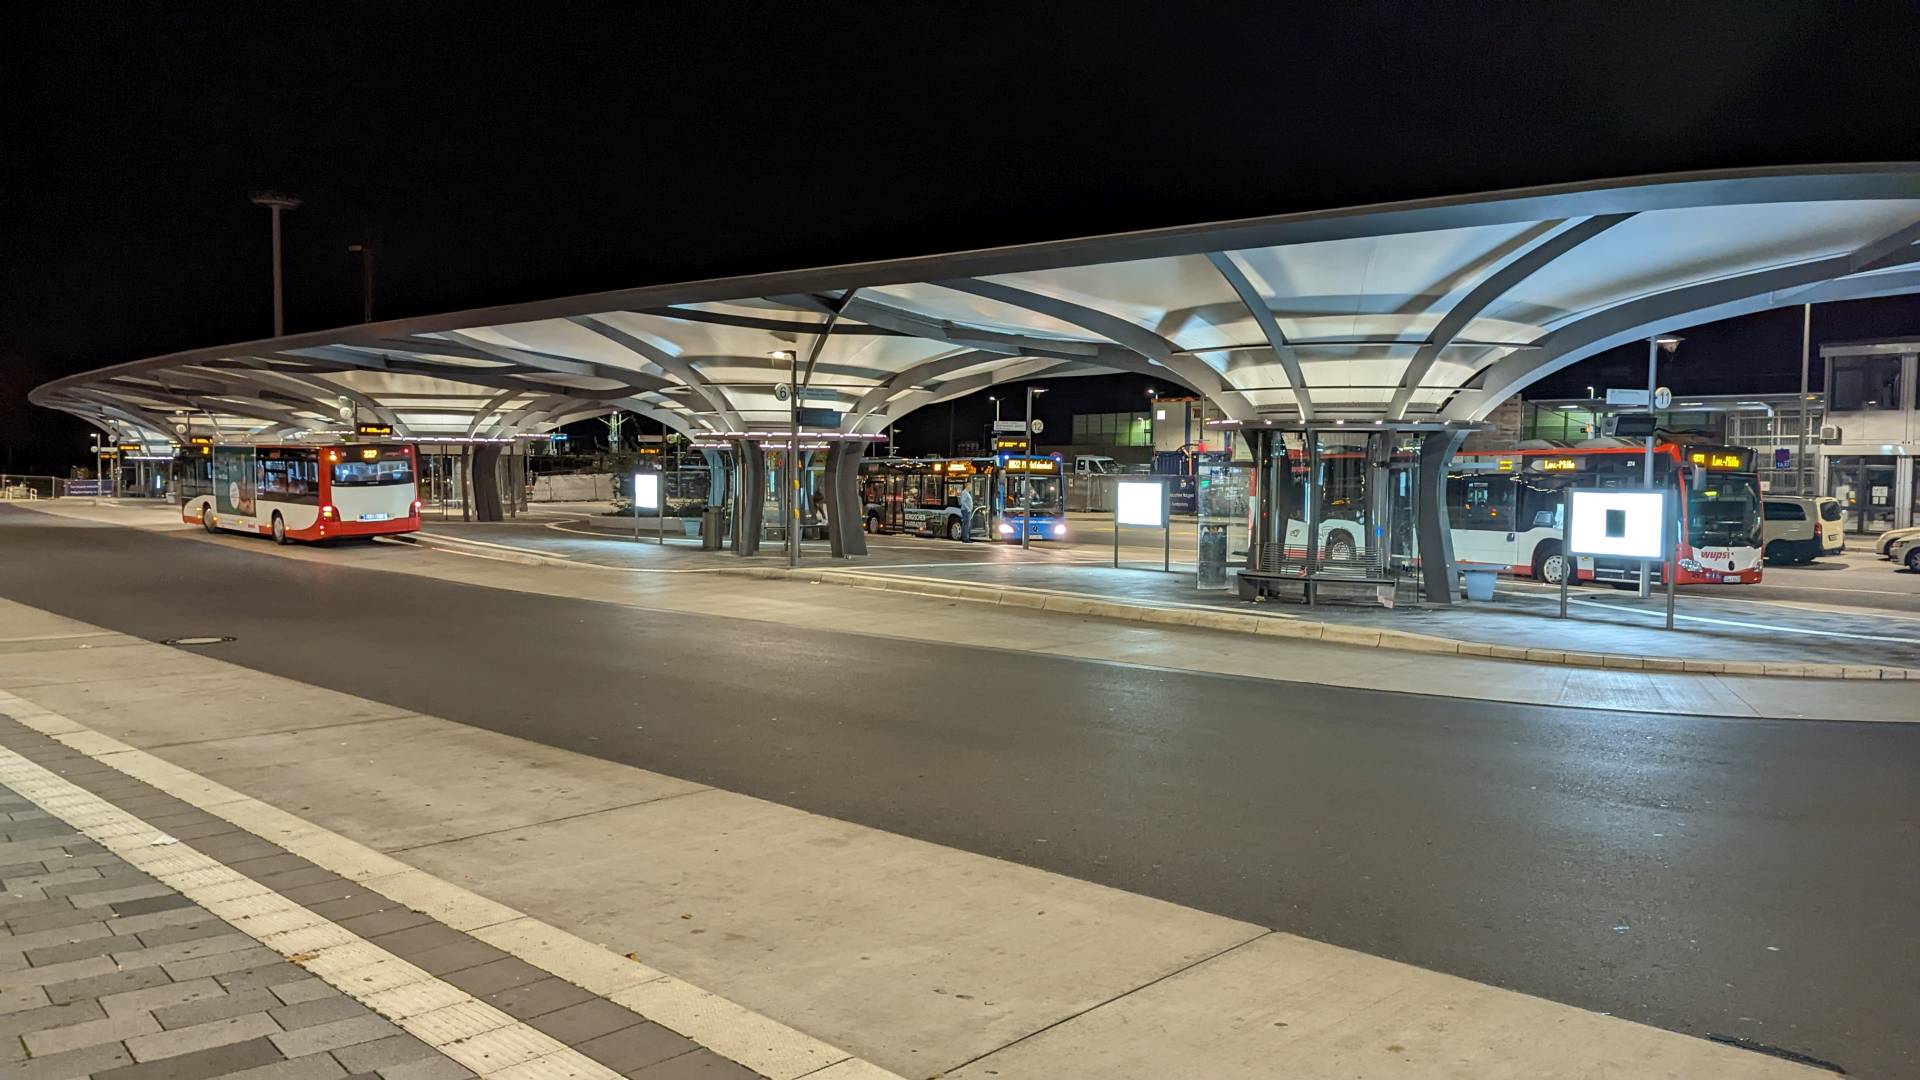 Der neue Busbahnhof in Leverkusen-Mitte. Die Überdachung und Stahlkonstruktion leuchten Stark. An den Bahnsteigen stehen einige Busse, die auf Fahrgäste warten. Im Hintergrund erkennt m an die großen Lichtsäulen, die Leverkusen von weit oben beleuchte